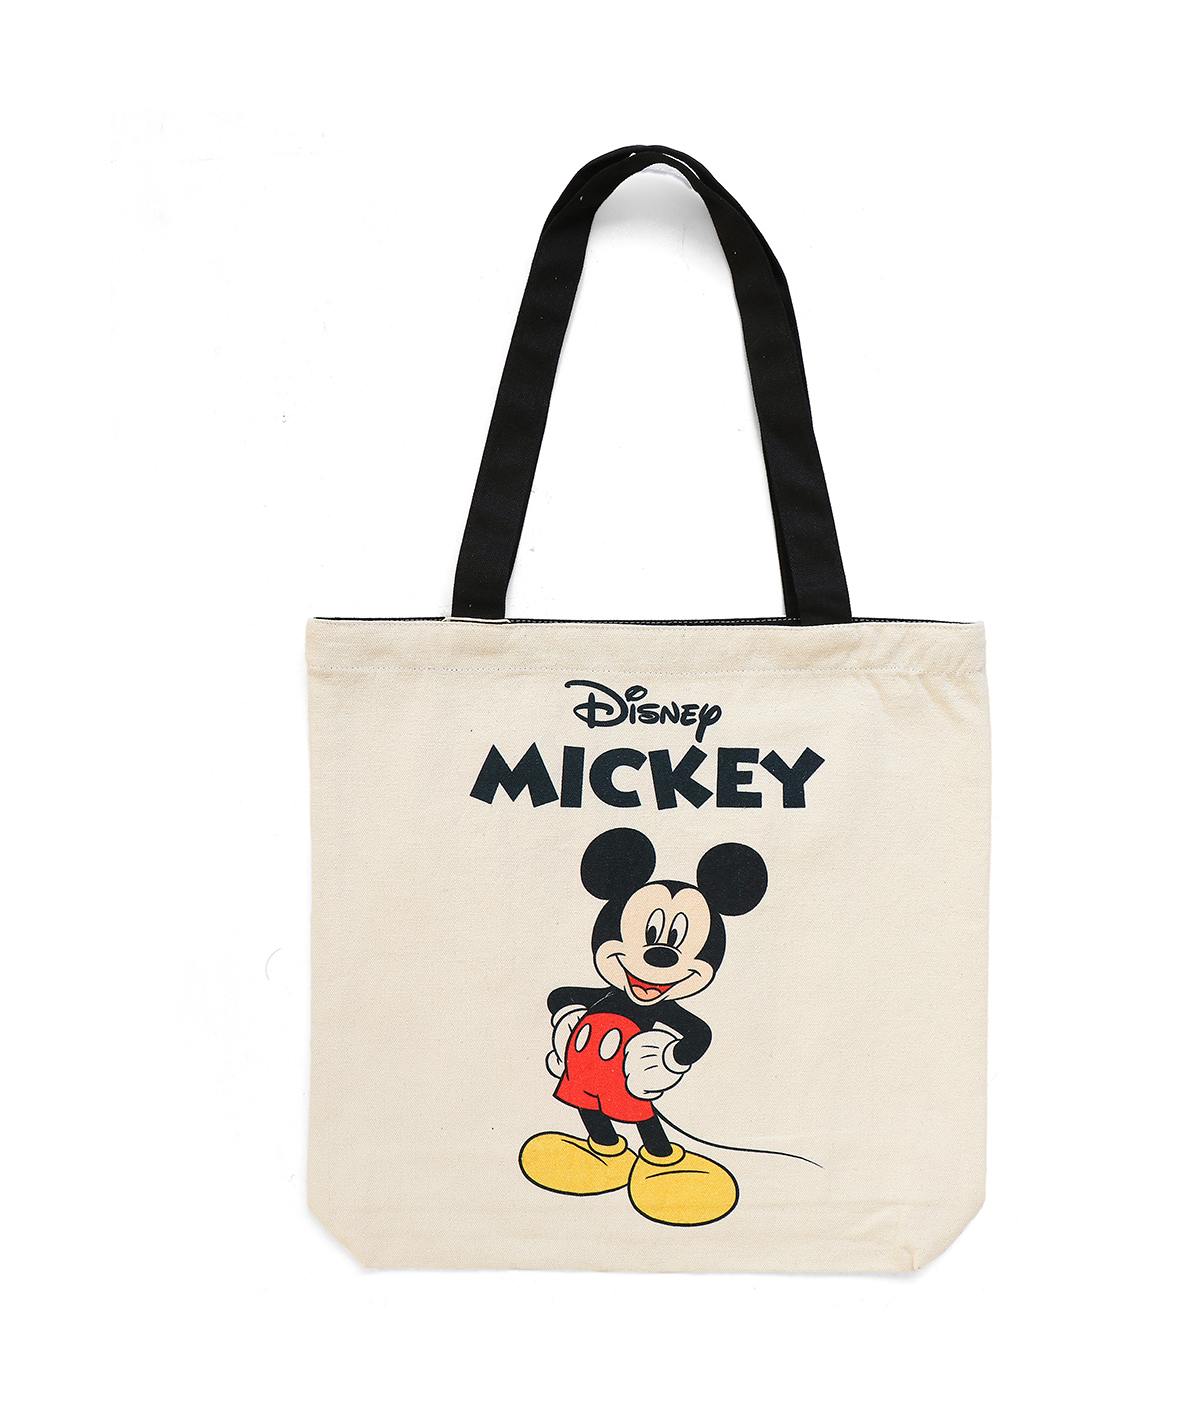 Disney bags